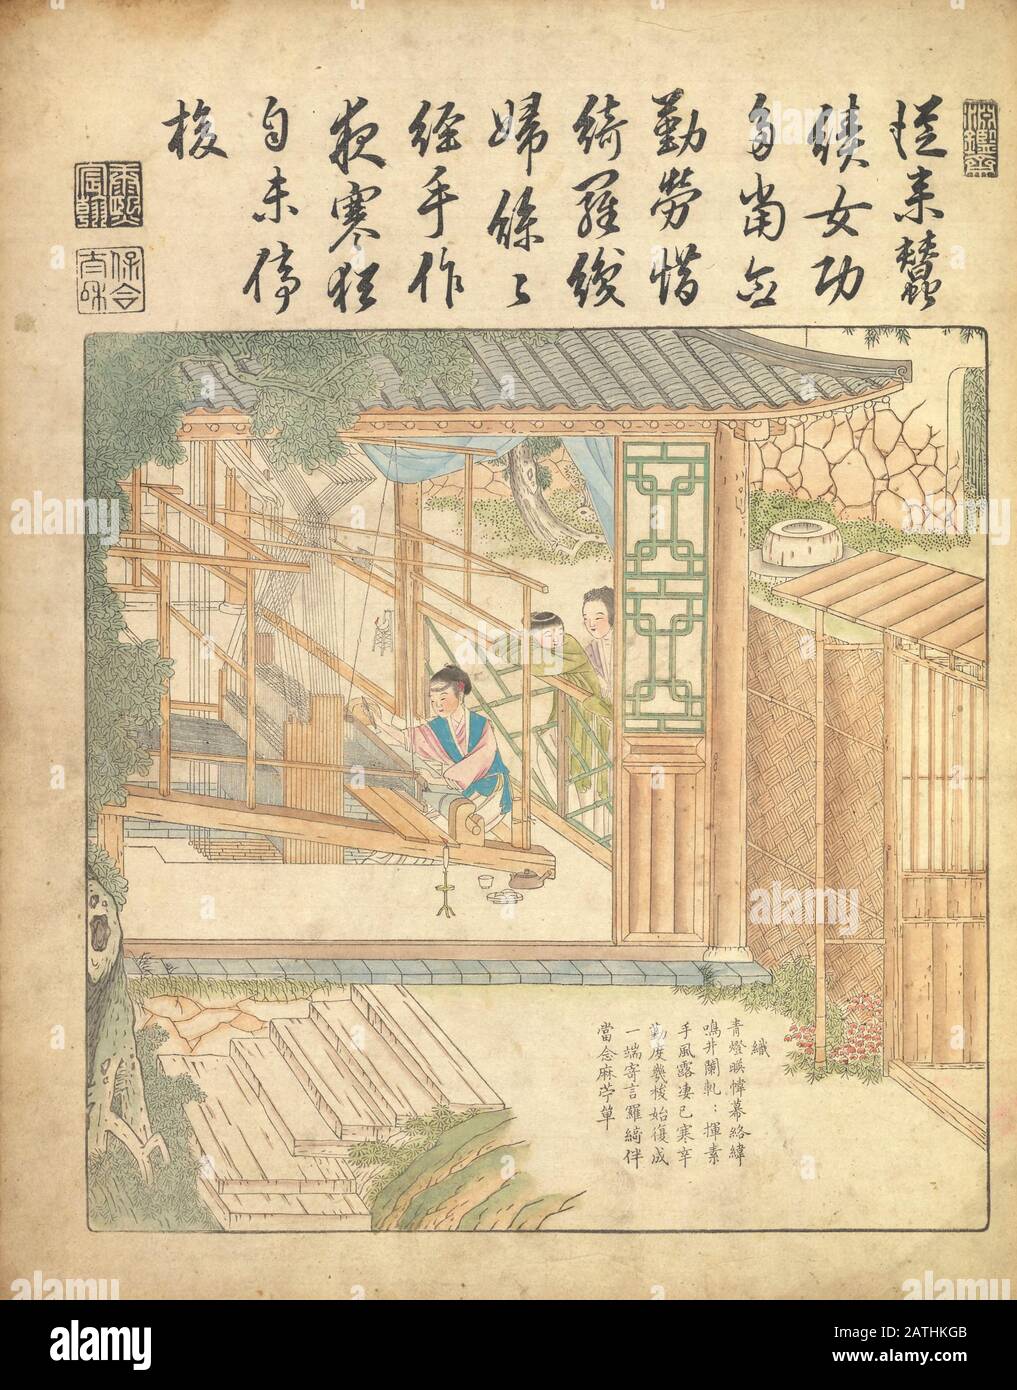 Ancient 17th century Chinese art Silk production Warping and weaving silk From Yu zhi geng zhi tu by Jiao, Bingzhen, 1696 Stock Photo